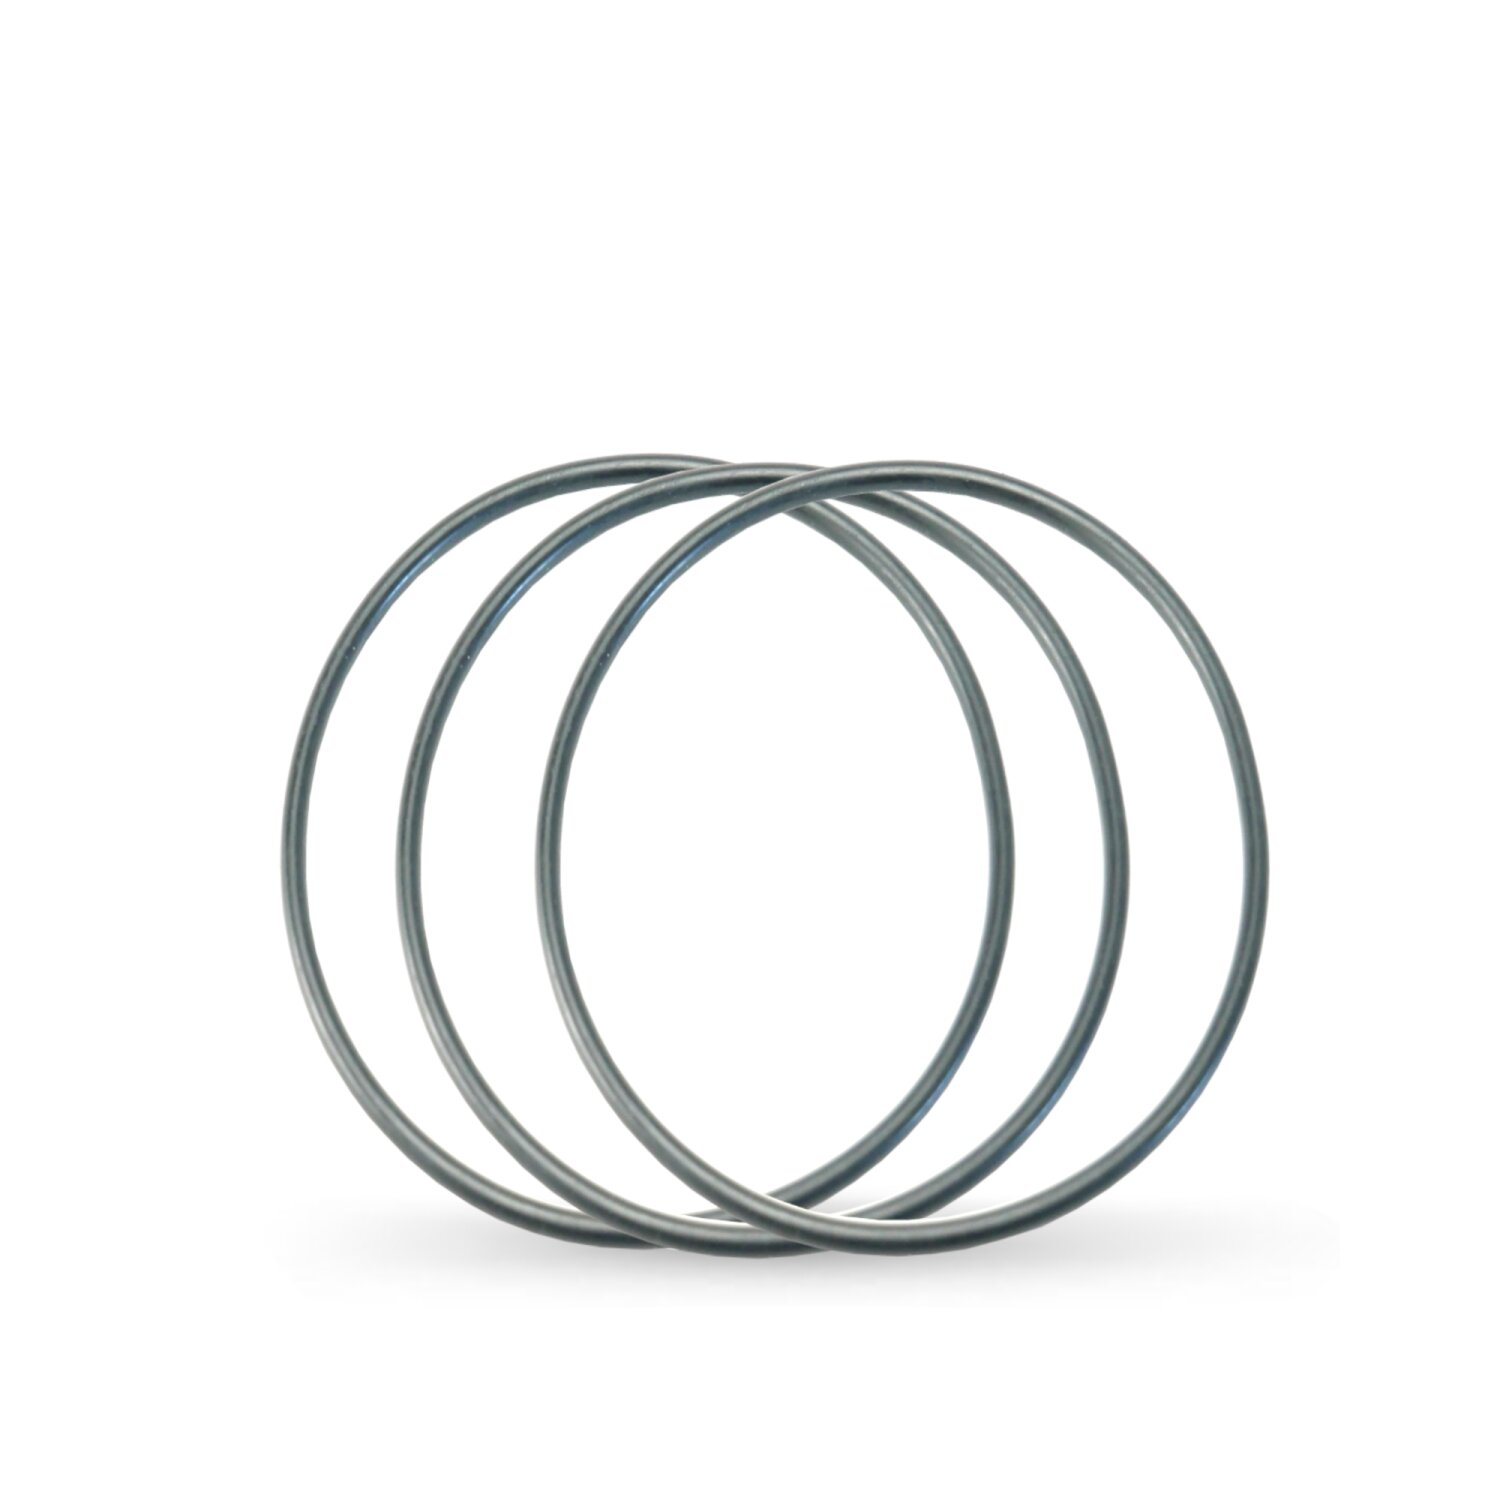 https://www.filterfritz.de/media/image/product/2015/lg/3er-set-o-ring-ersatzdichtung.jpg